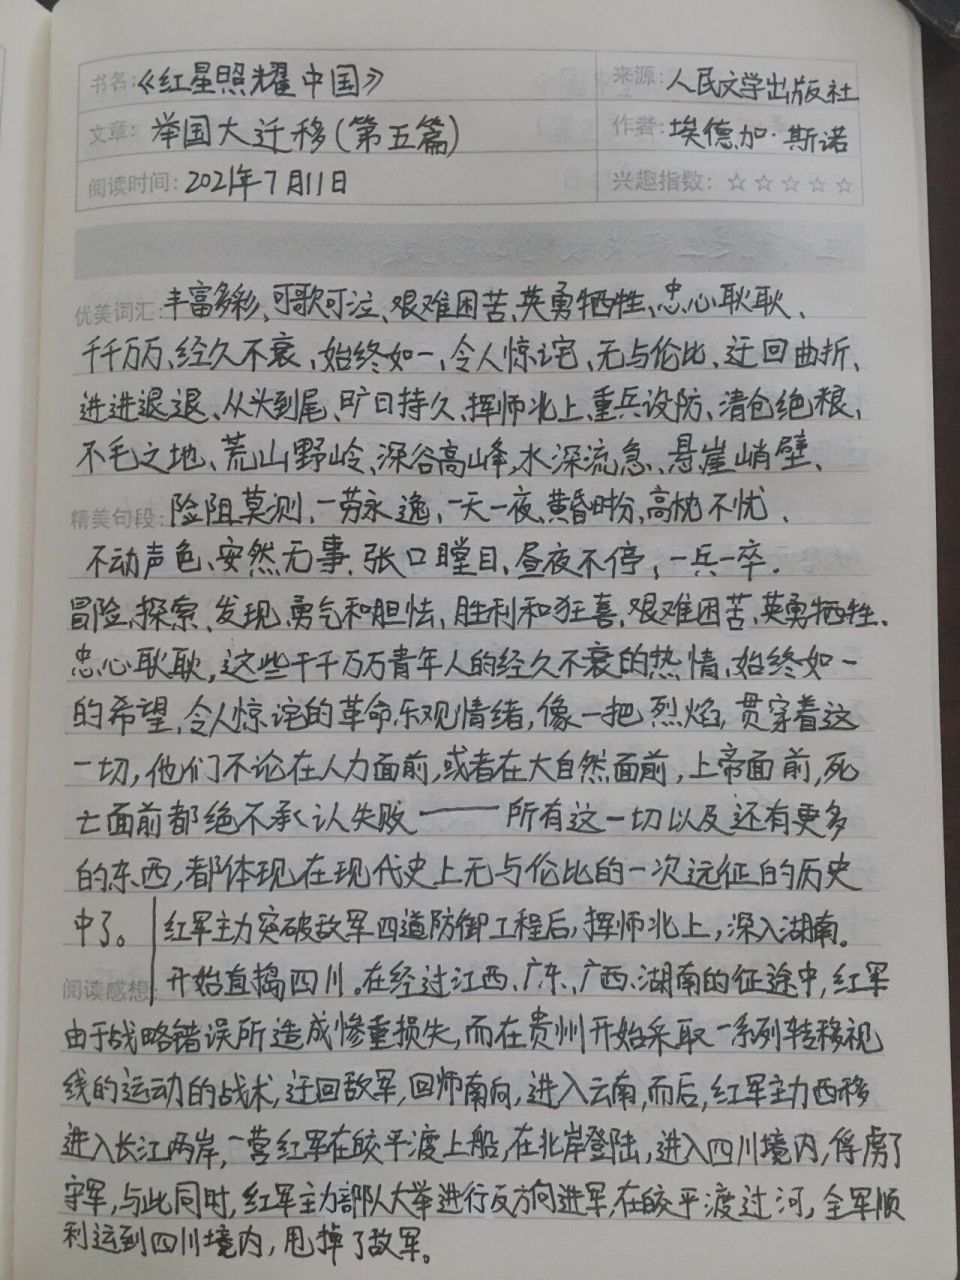 《红星照耀中国9899》读书笔记(五) 第五篇 第五次围剿 举国大